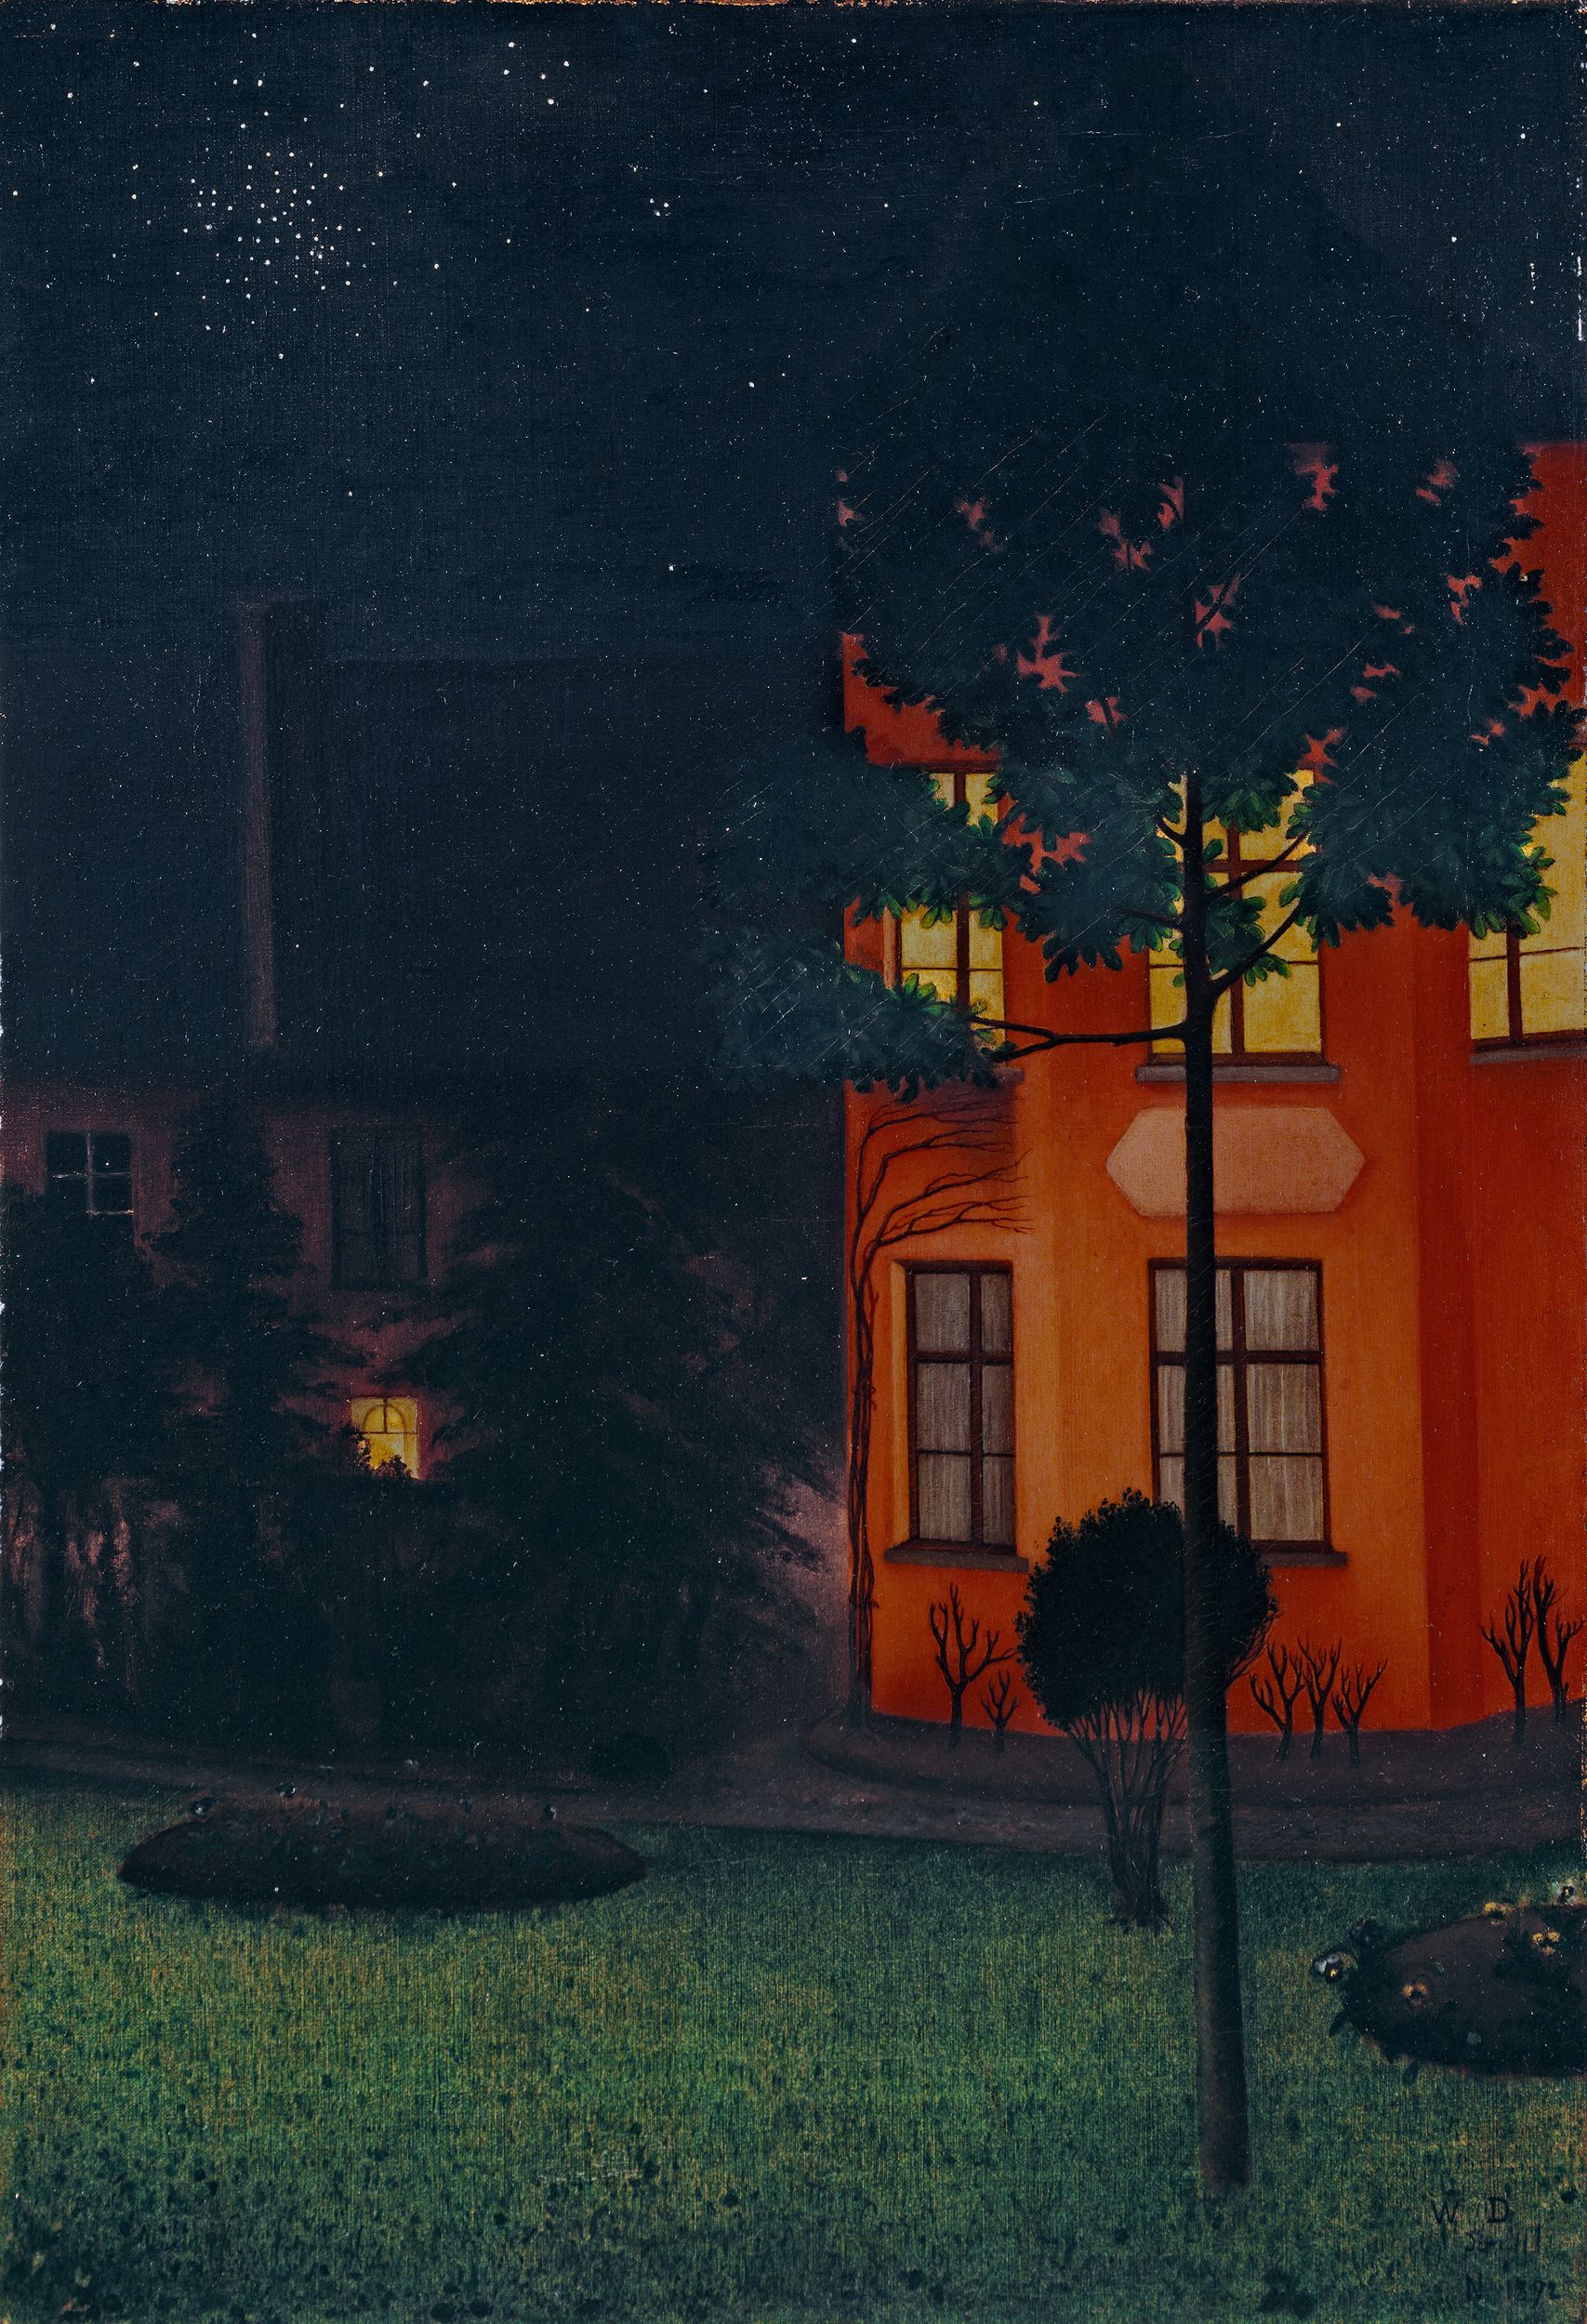 ブラインド・ハウス by William Degouve de Nuncques - 1892年 - 63 x 43 cm 